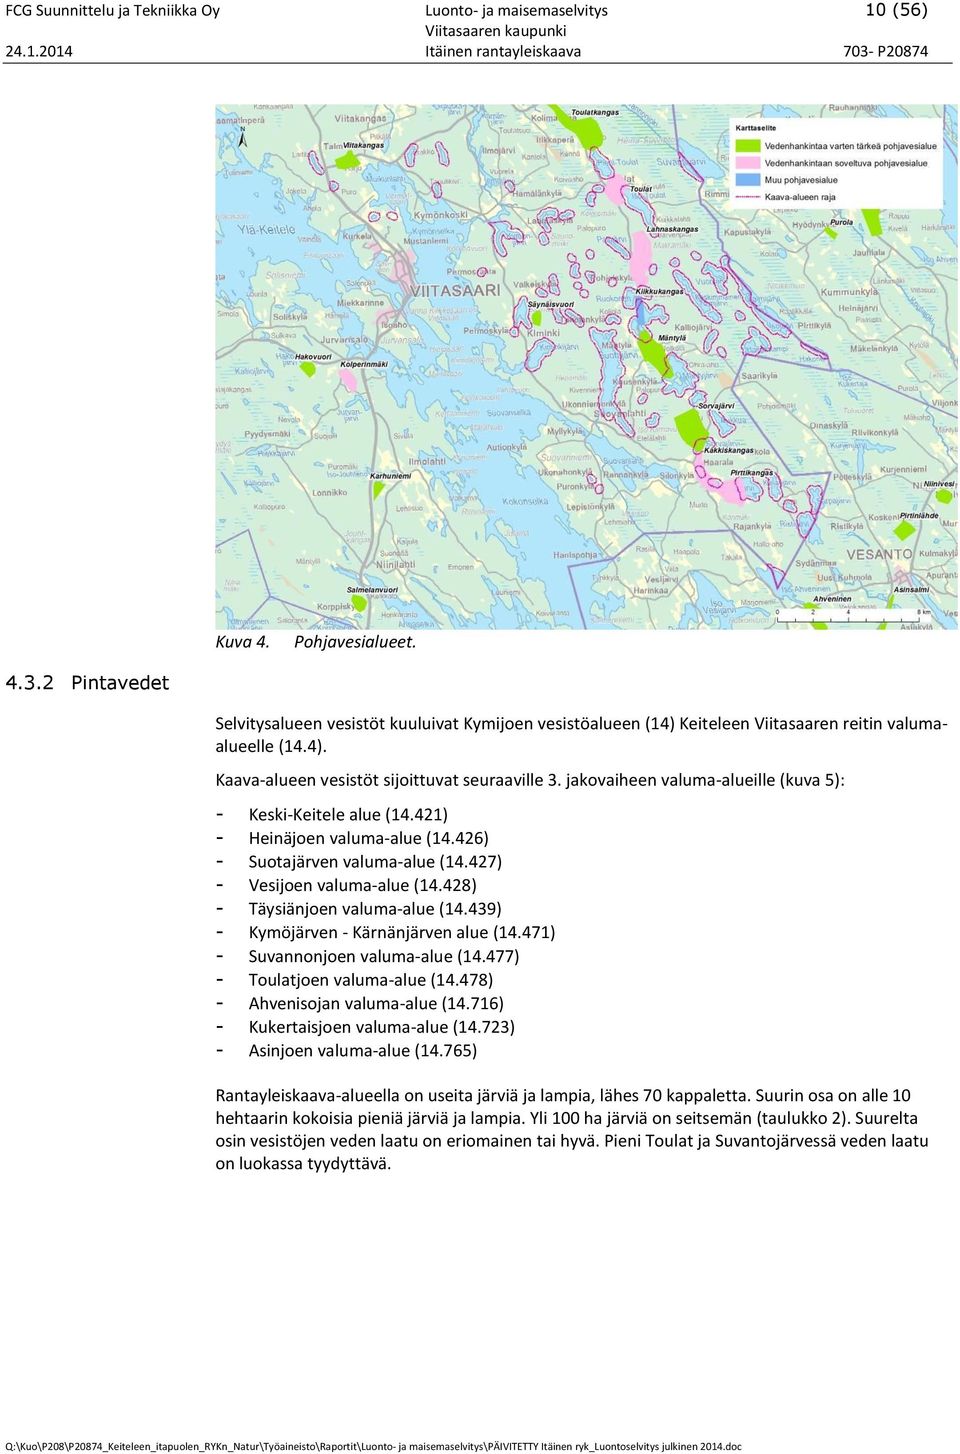 jakovaiheen valuma-alueille (kuva 5): - Keski-Keitele alue (14.421) - Heinäjoen valuma-alue (14.426) - Suotajärven valuma-alue (14.427) - Vesijoen valuma-alue (14.428) - Täysiänjoen valuma-alue (14.